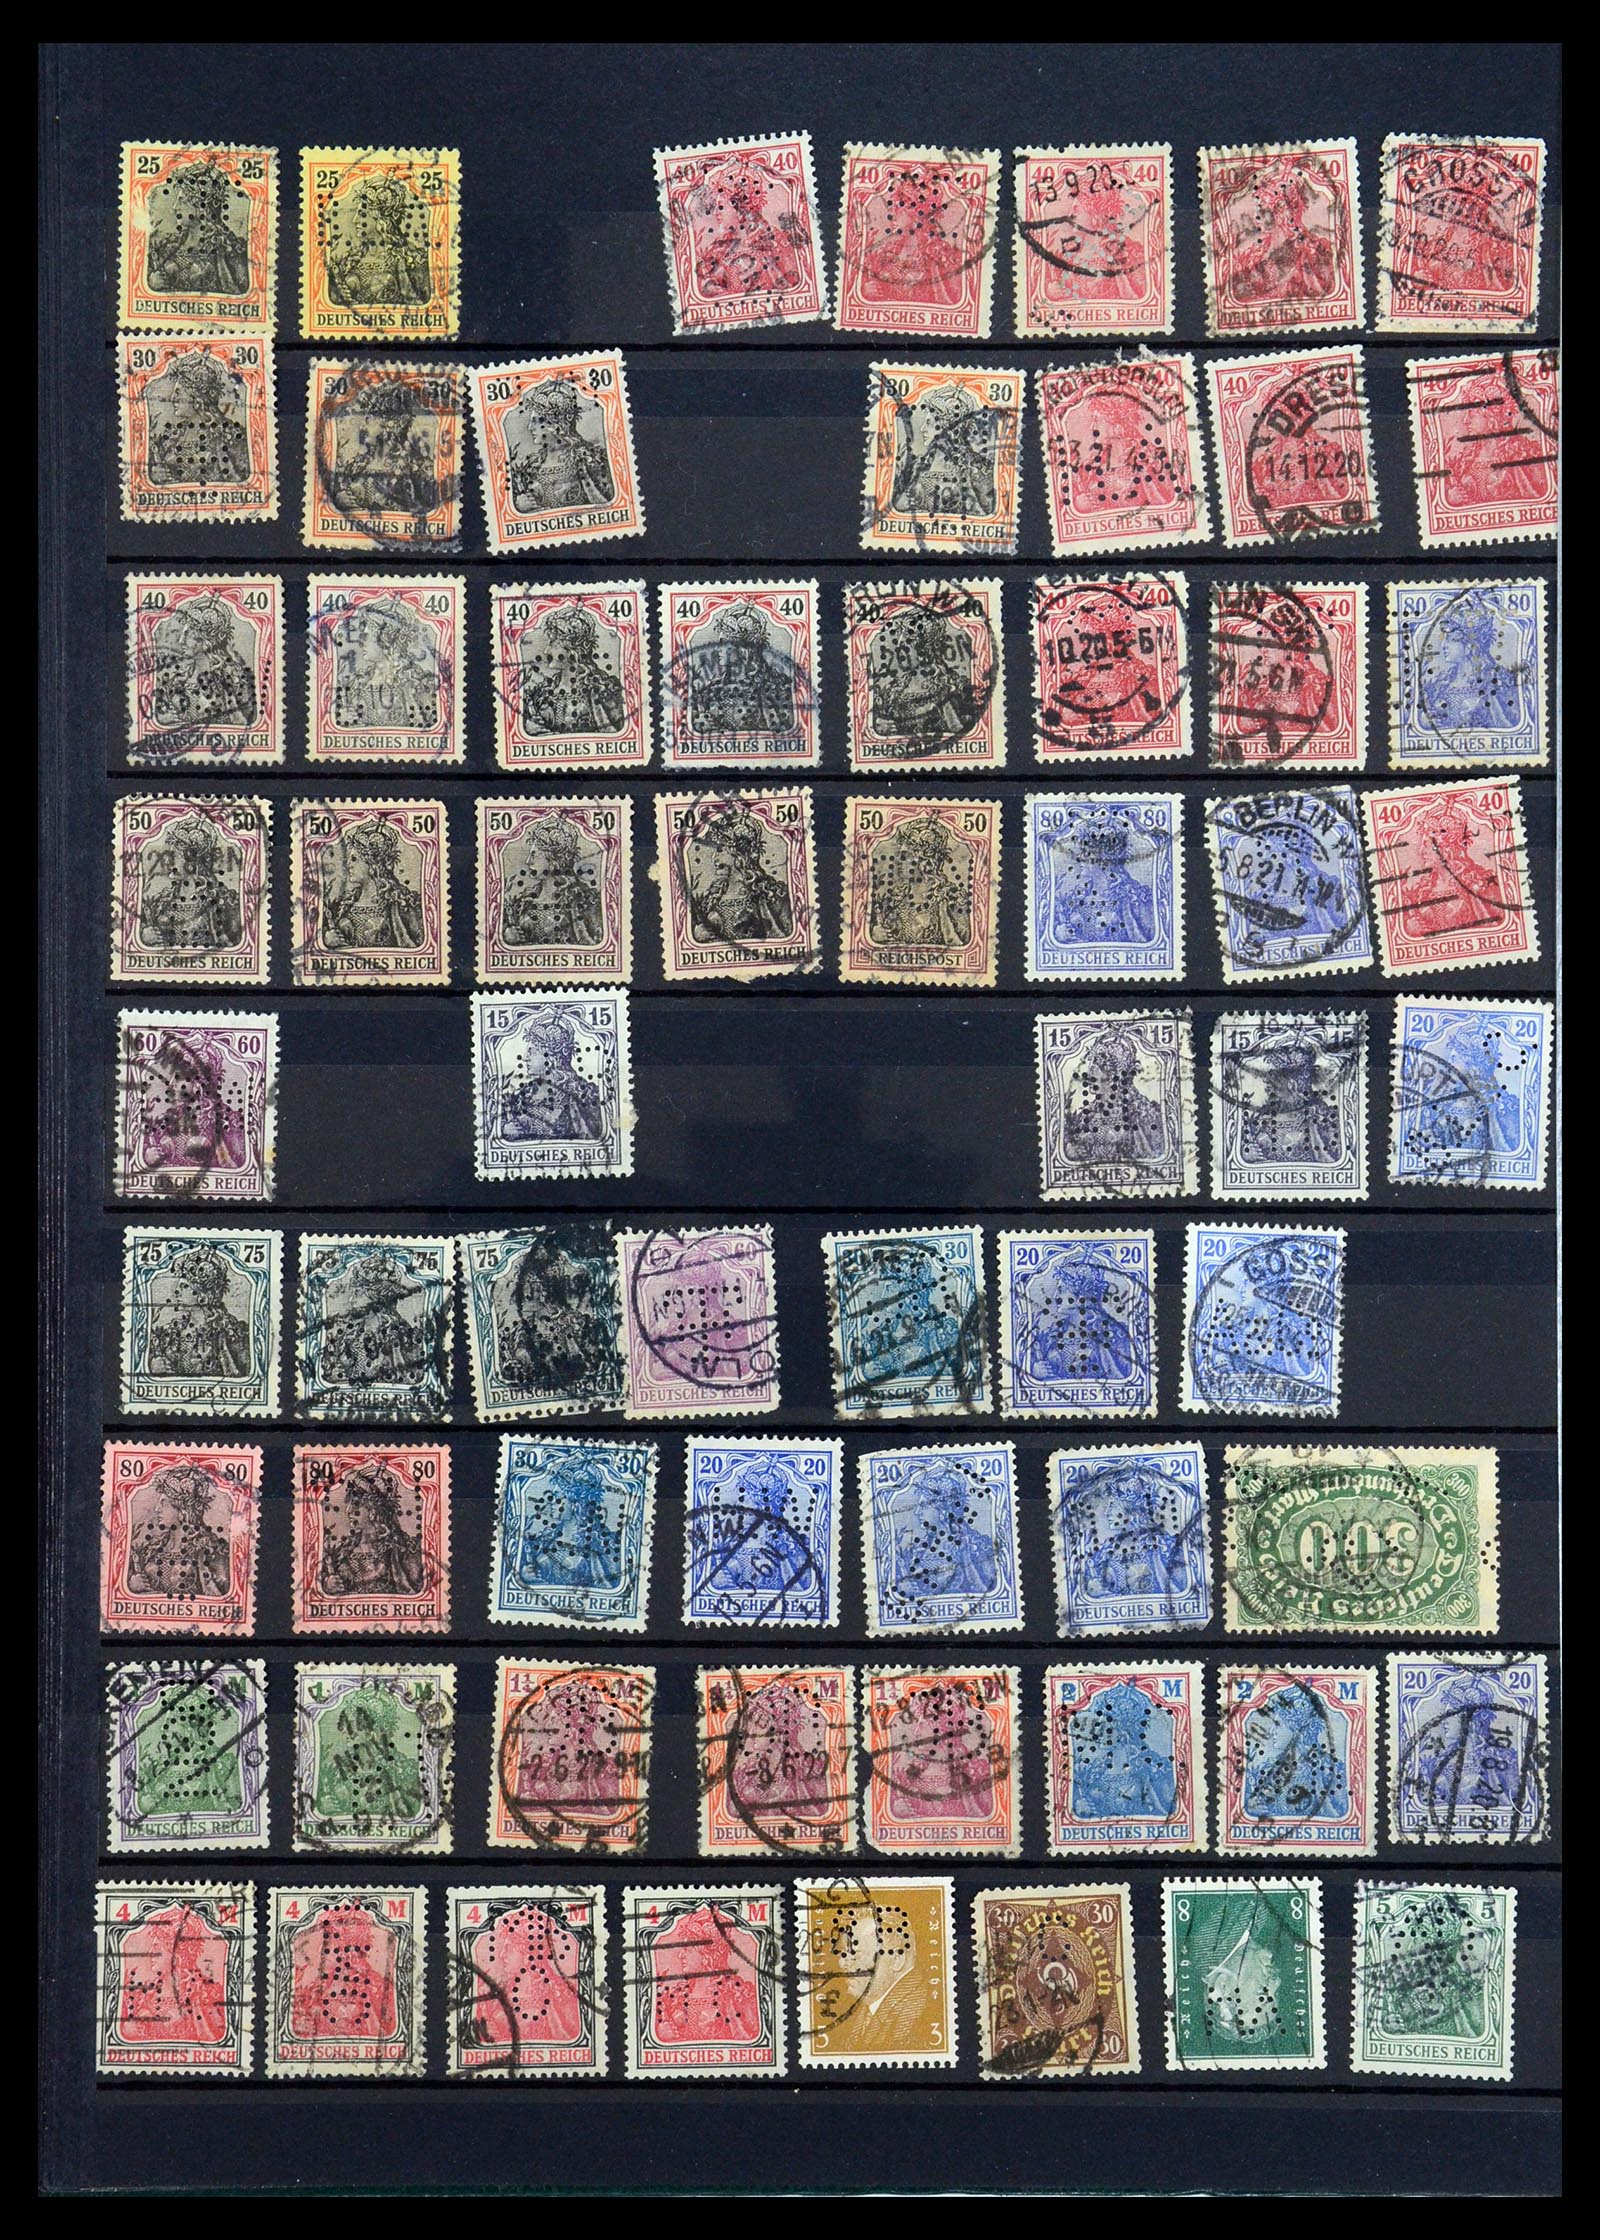 35183 024 - Stamp Collection 35183 German Reich perfins 1880-1945.